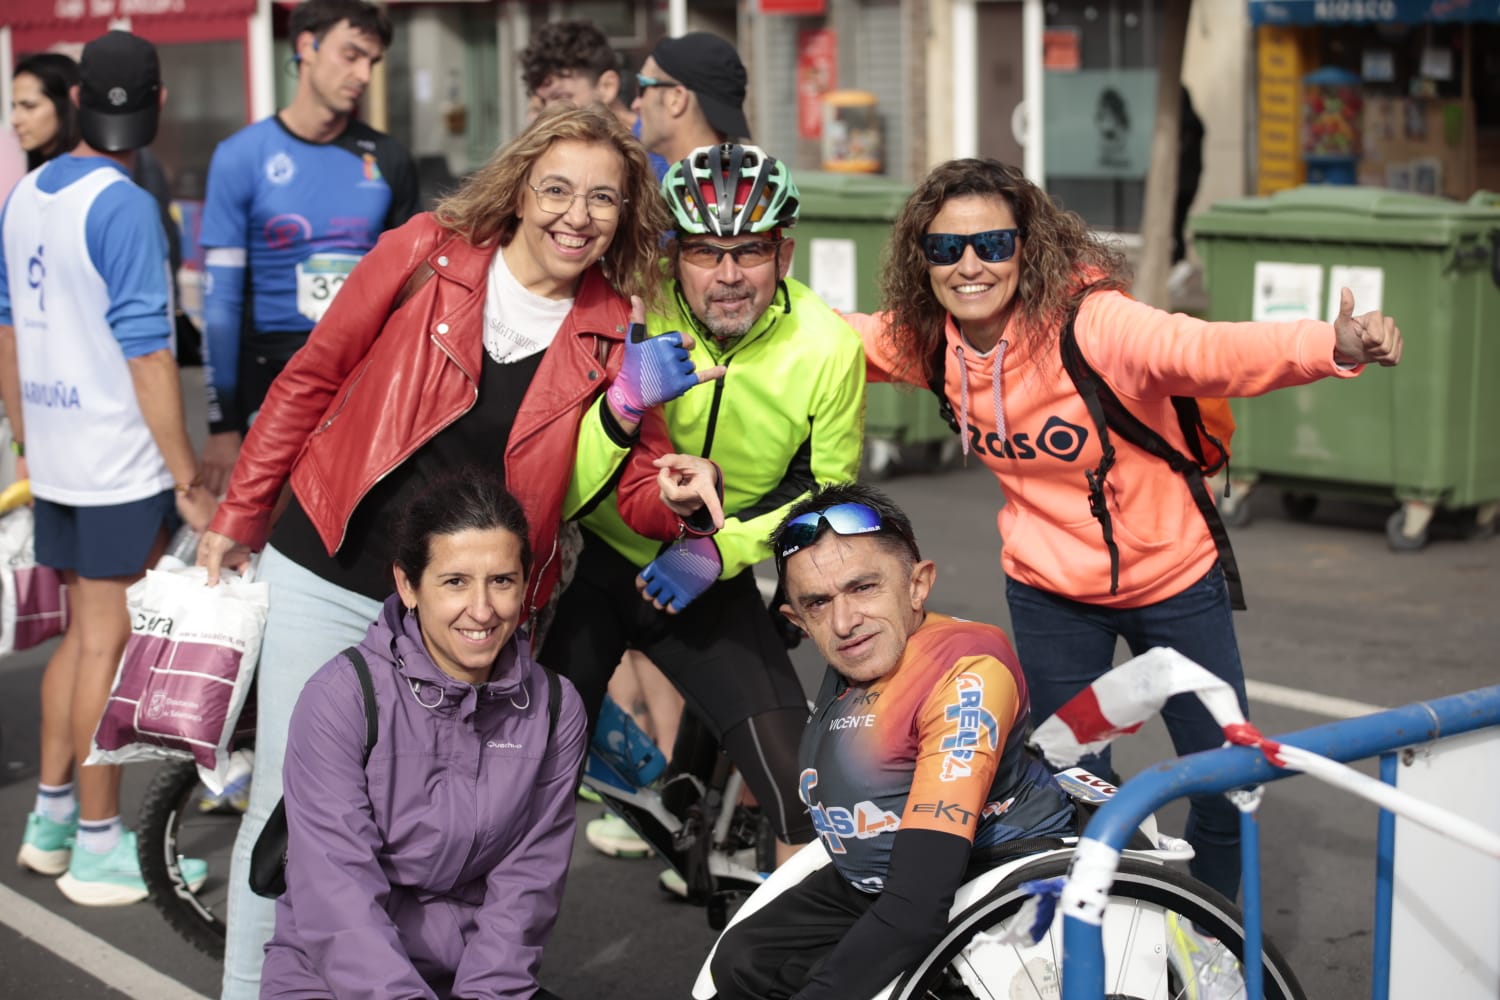 Día grande de atletismo en la Media Maratón de la Diputación